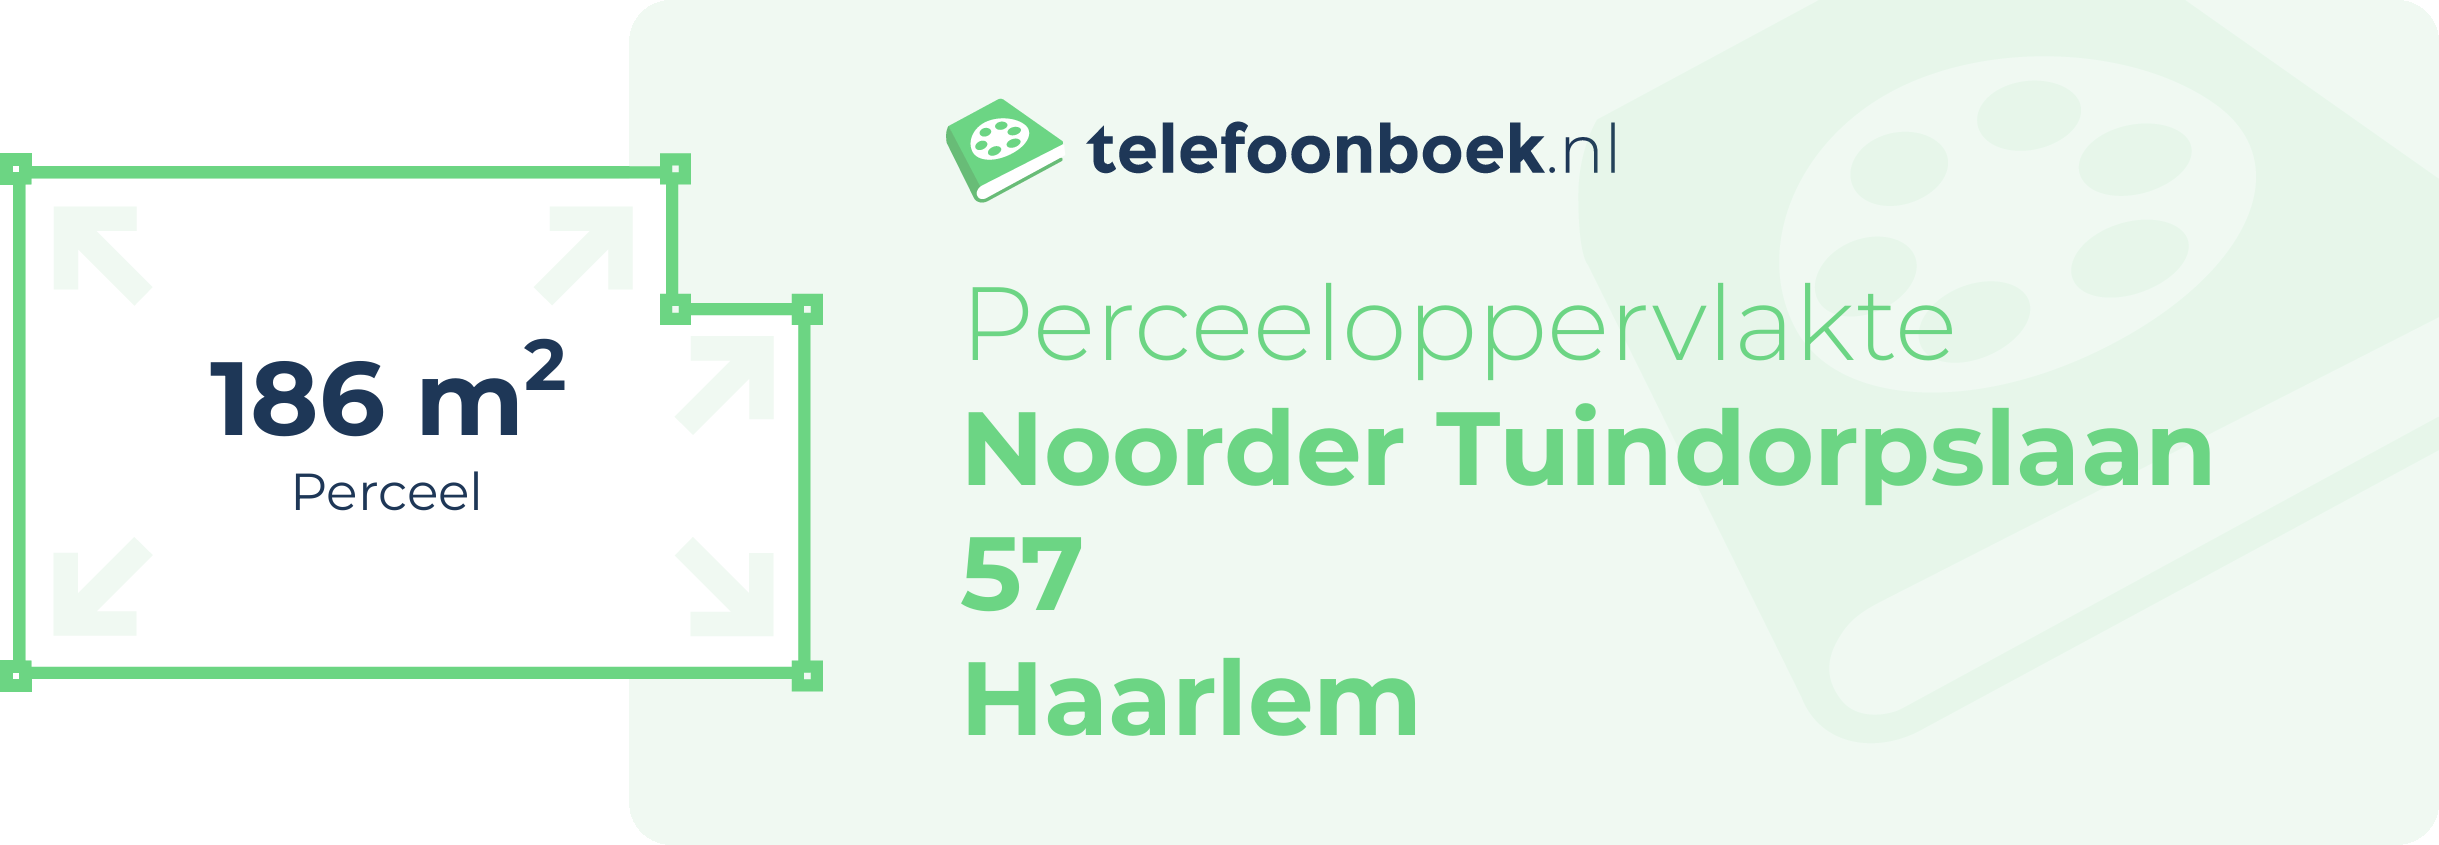 Perceeloppervlakte Noorder Tuindorpslaan 57 Haarlem